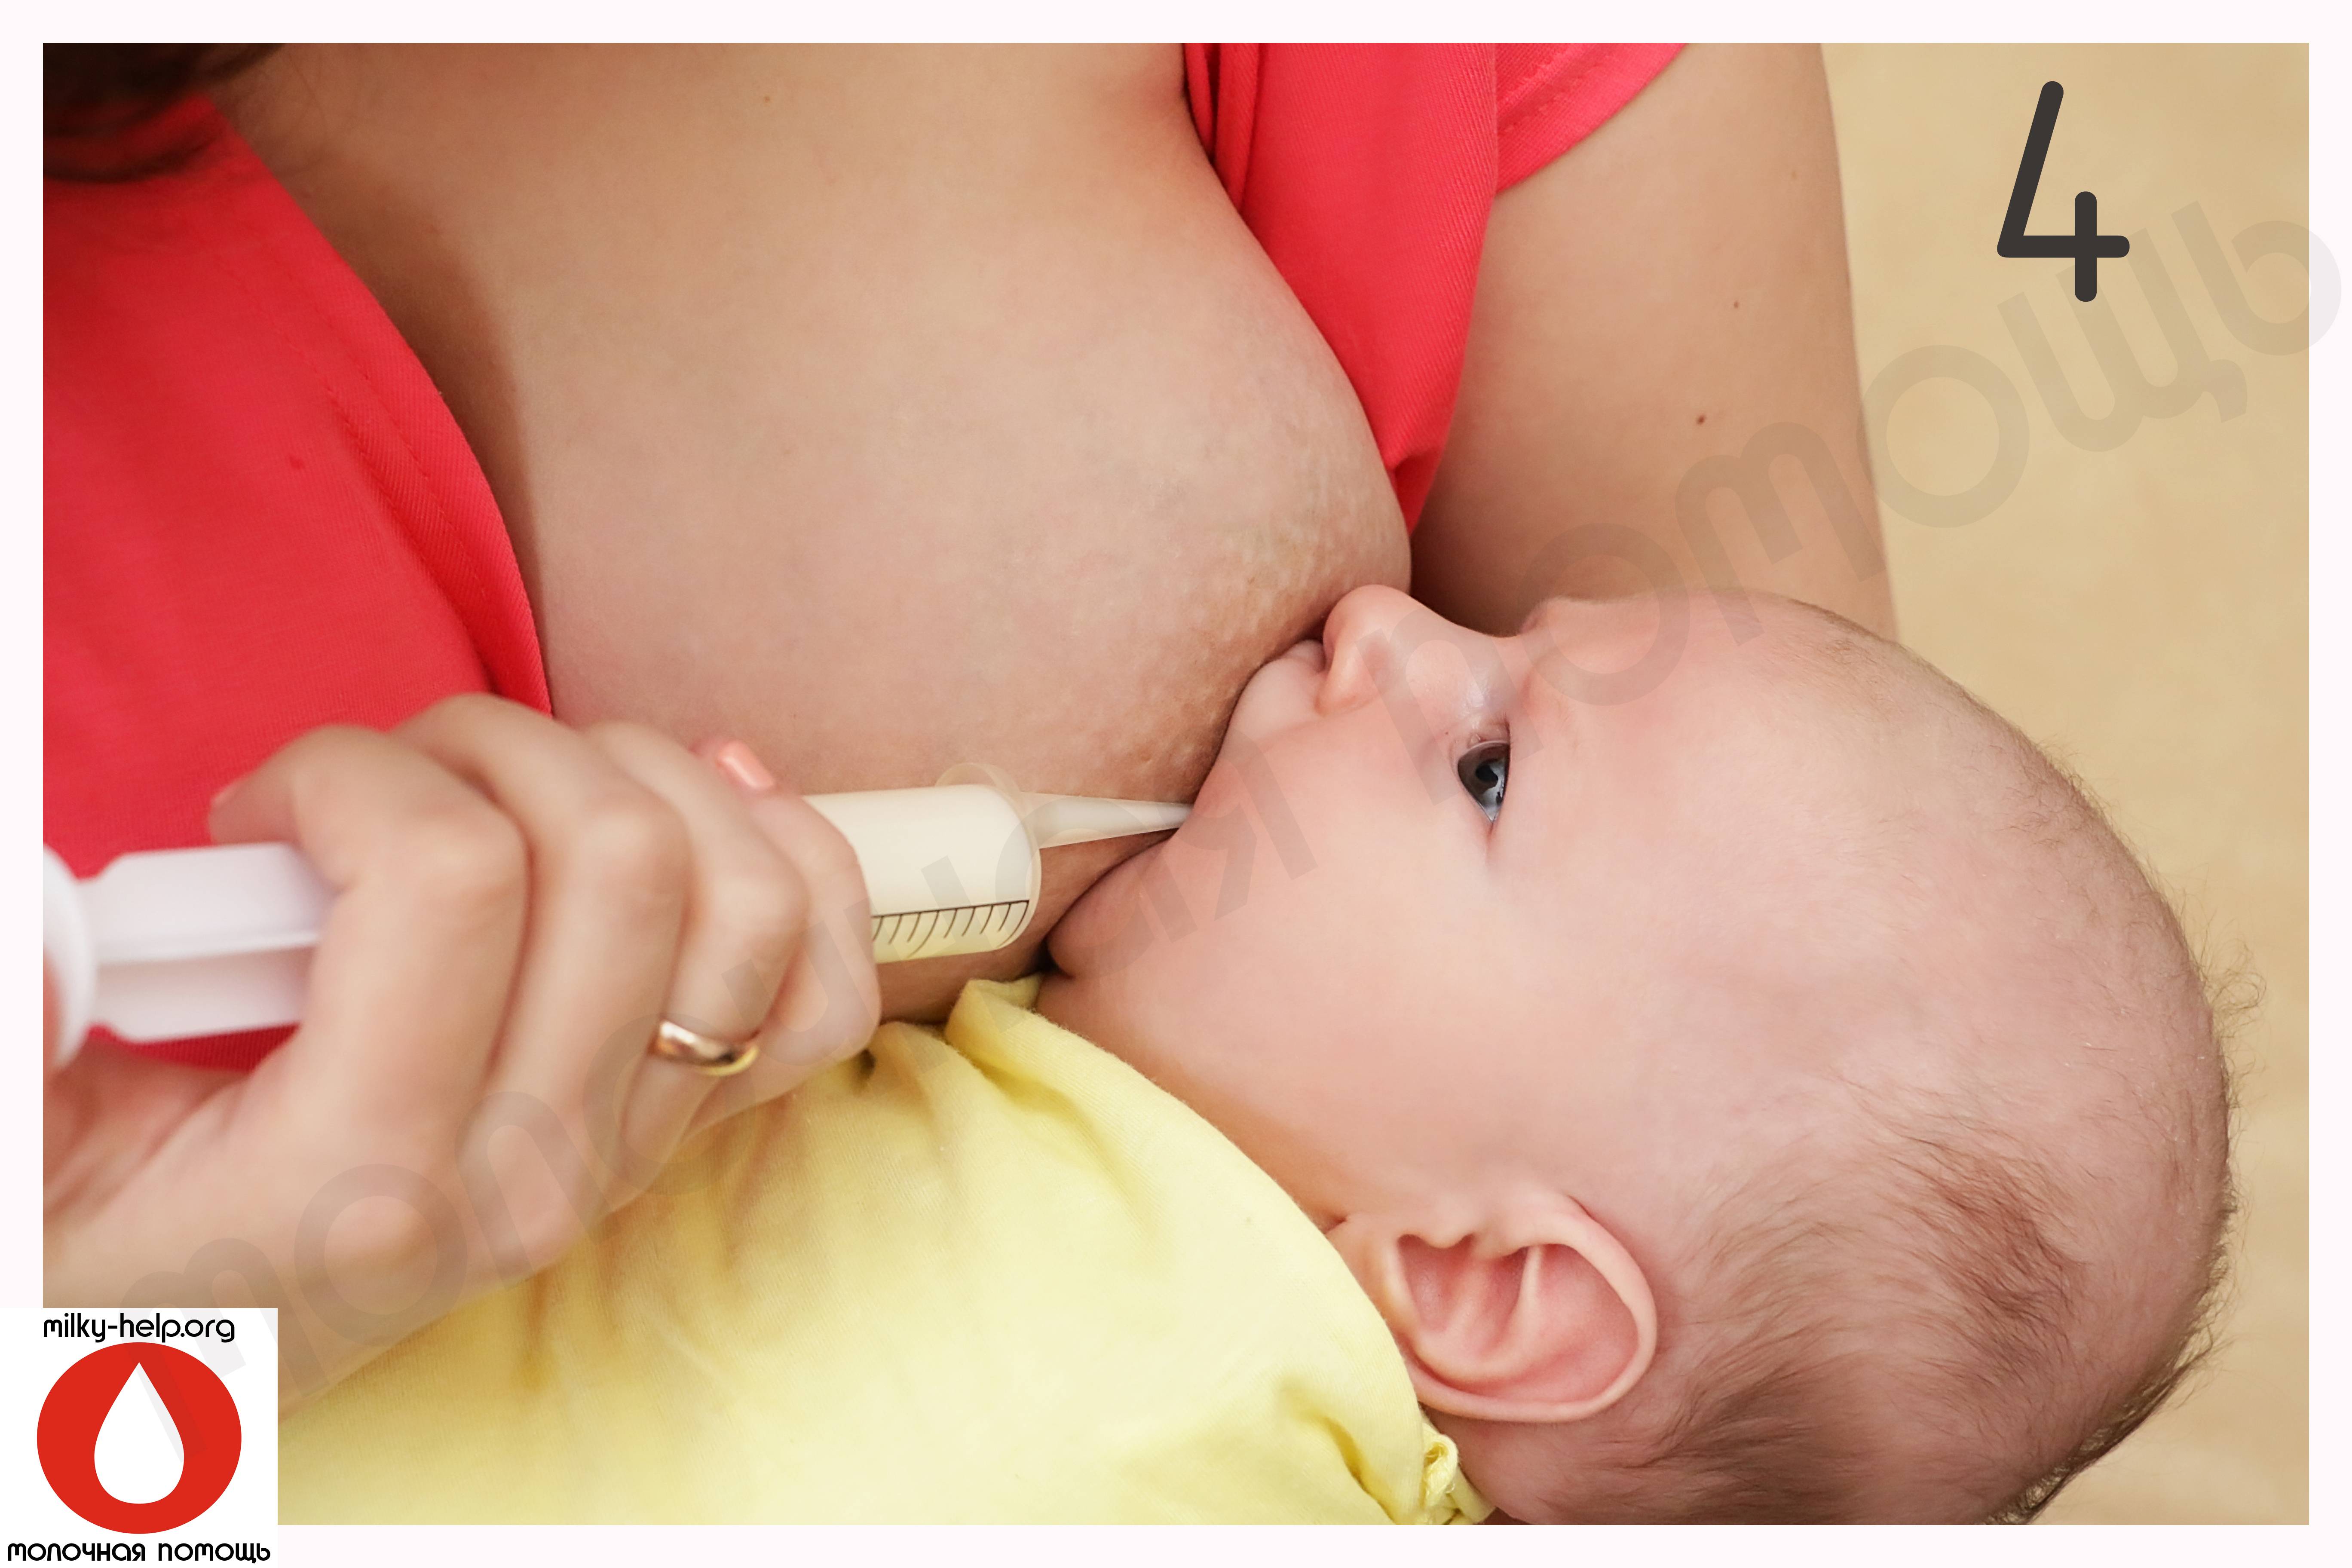 Гв и питание мамы - ребёнок кусает грудь при кормлении. что делать?